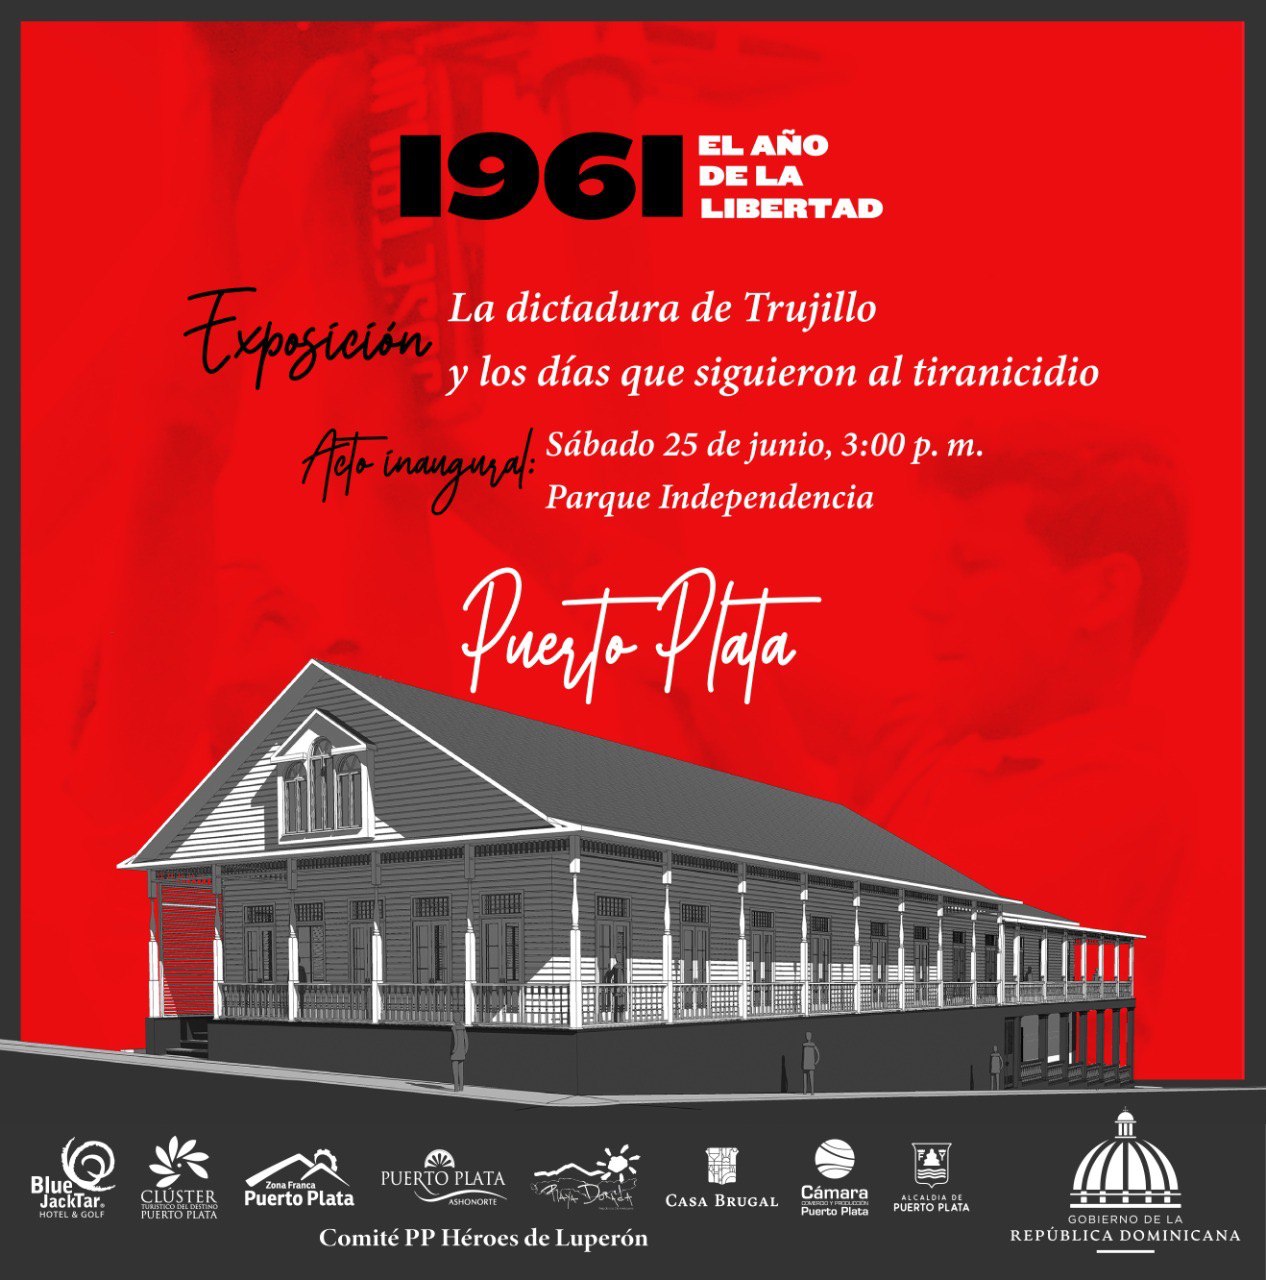 Llega a Puerto Plata interesante exposición histórica 